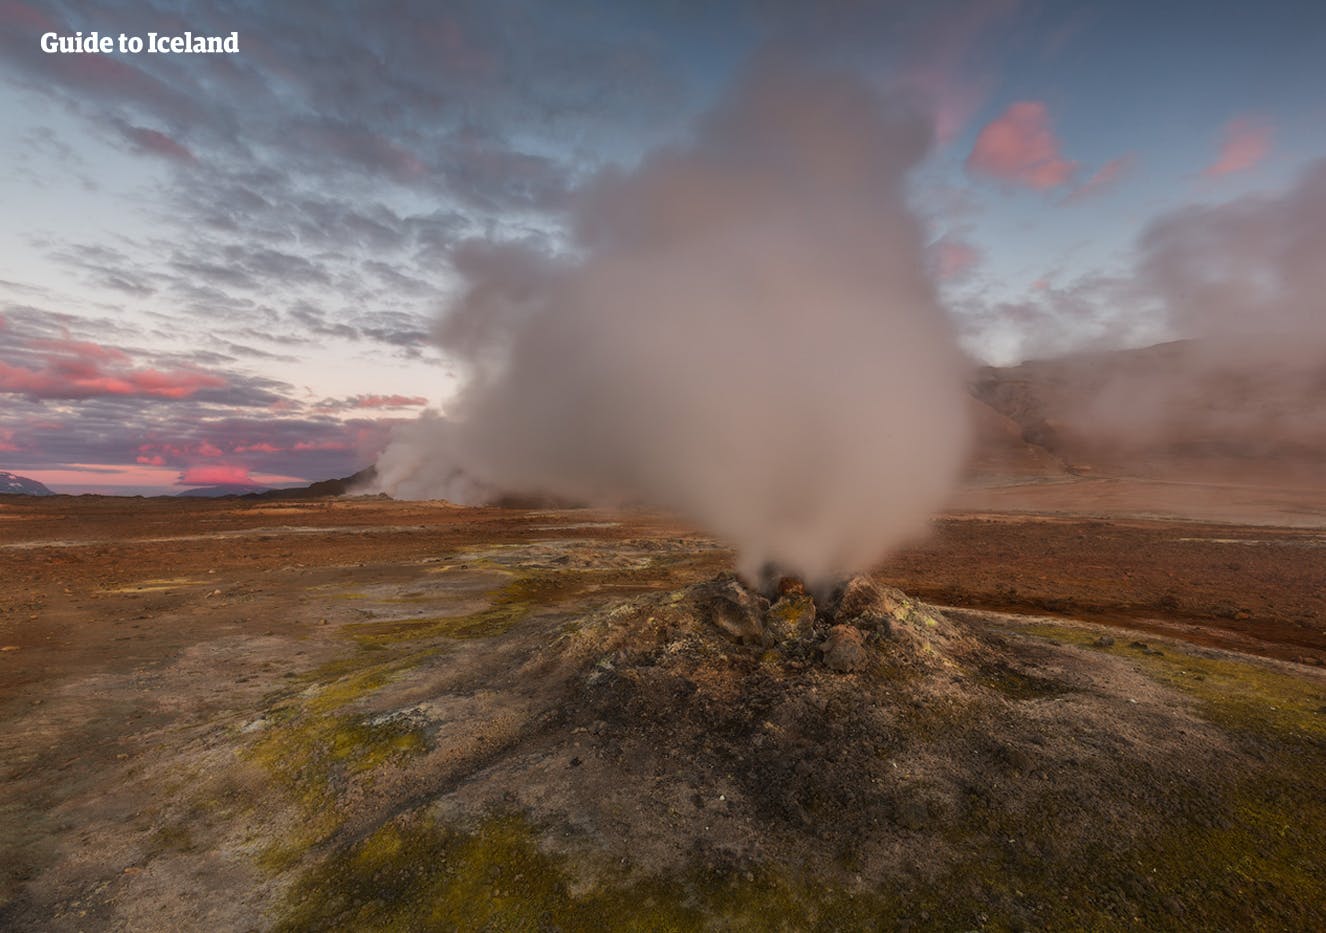 ไอน้ำพวยพุ่งในเขตพลังงานความร้อนใต้พิภพที่ทะเลสาบมิวาทน์ในทางเหนือของไอซ์แลนด์